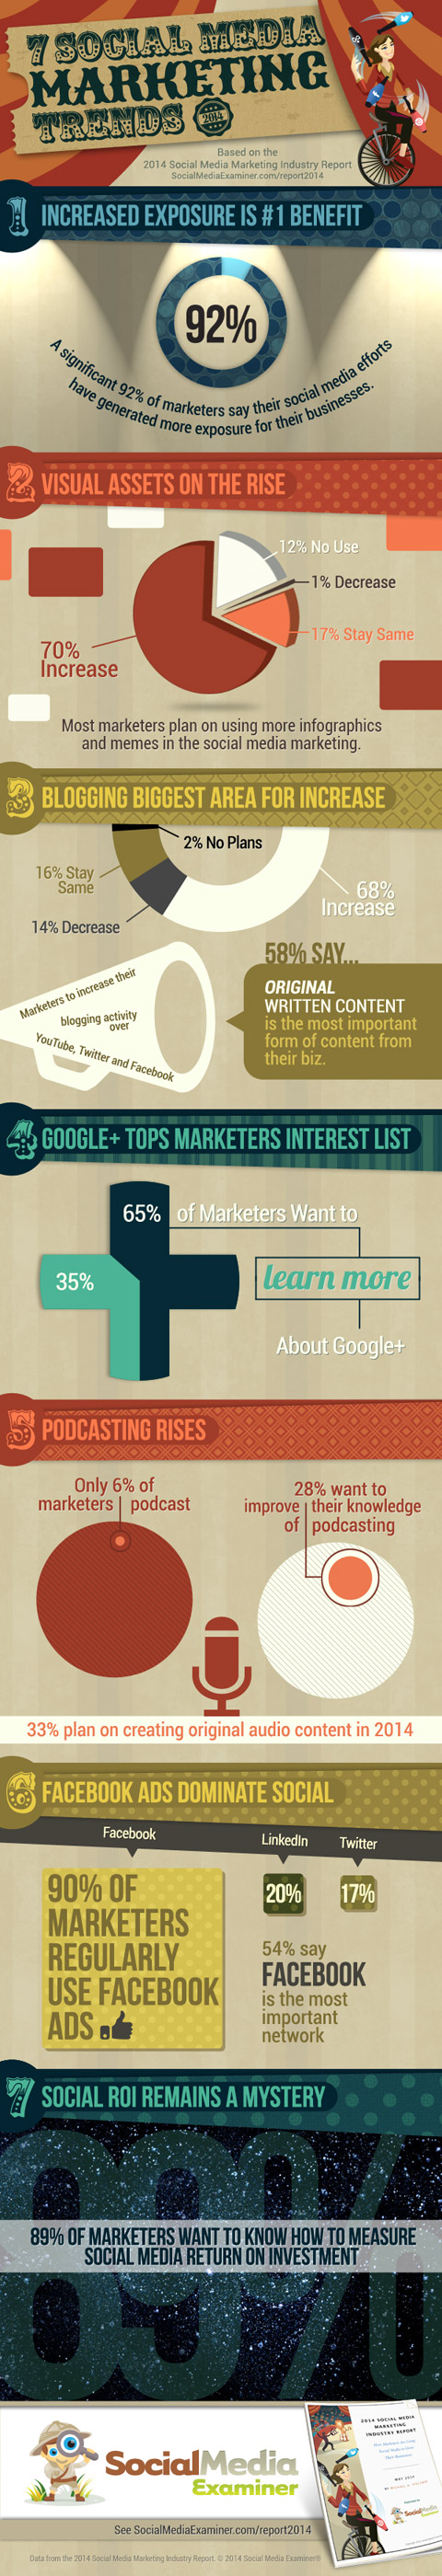 social media examiner marketing trends infographic